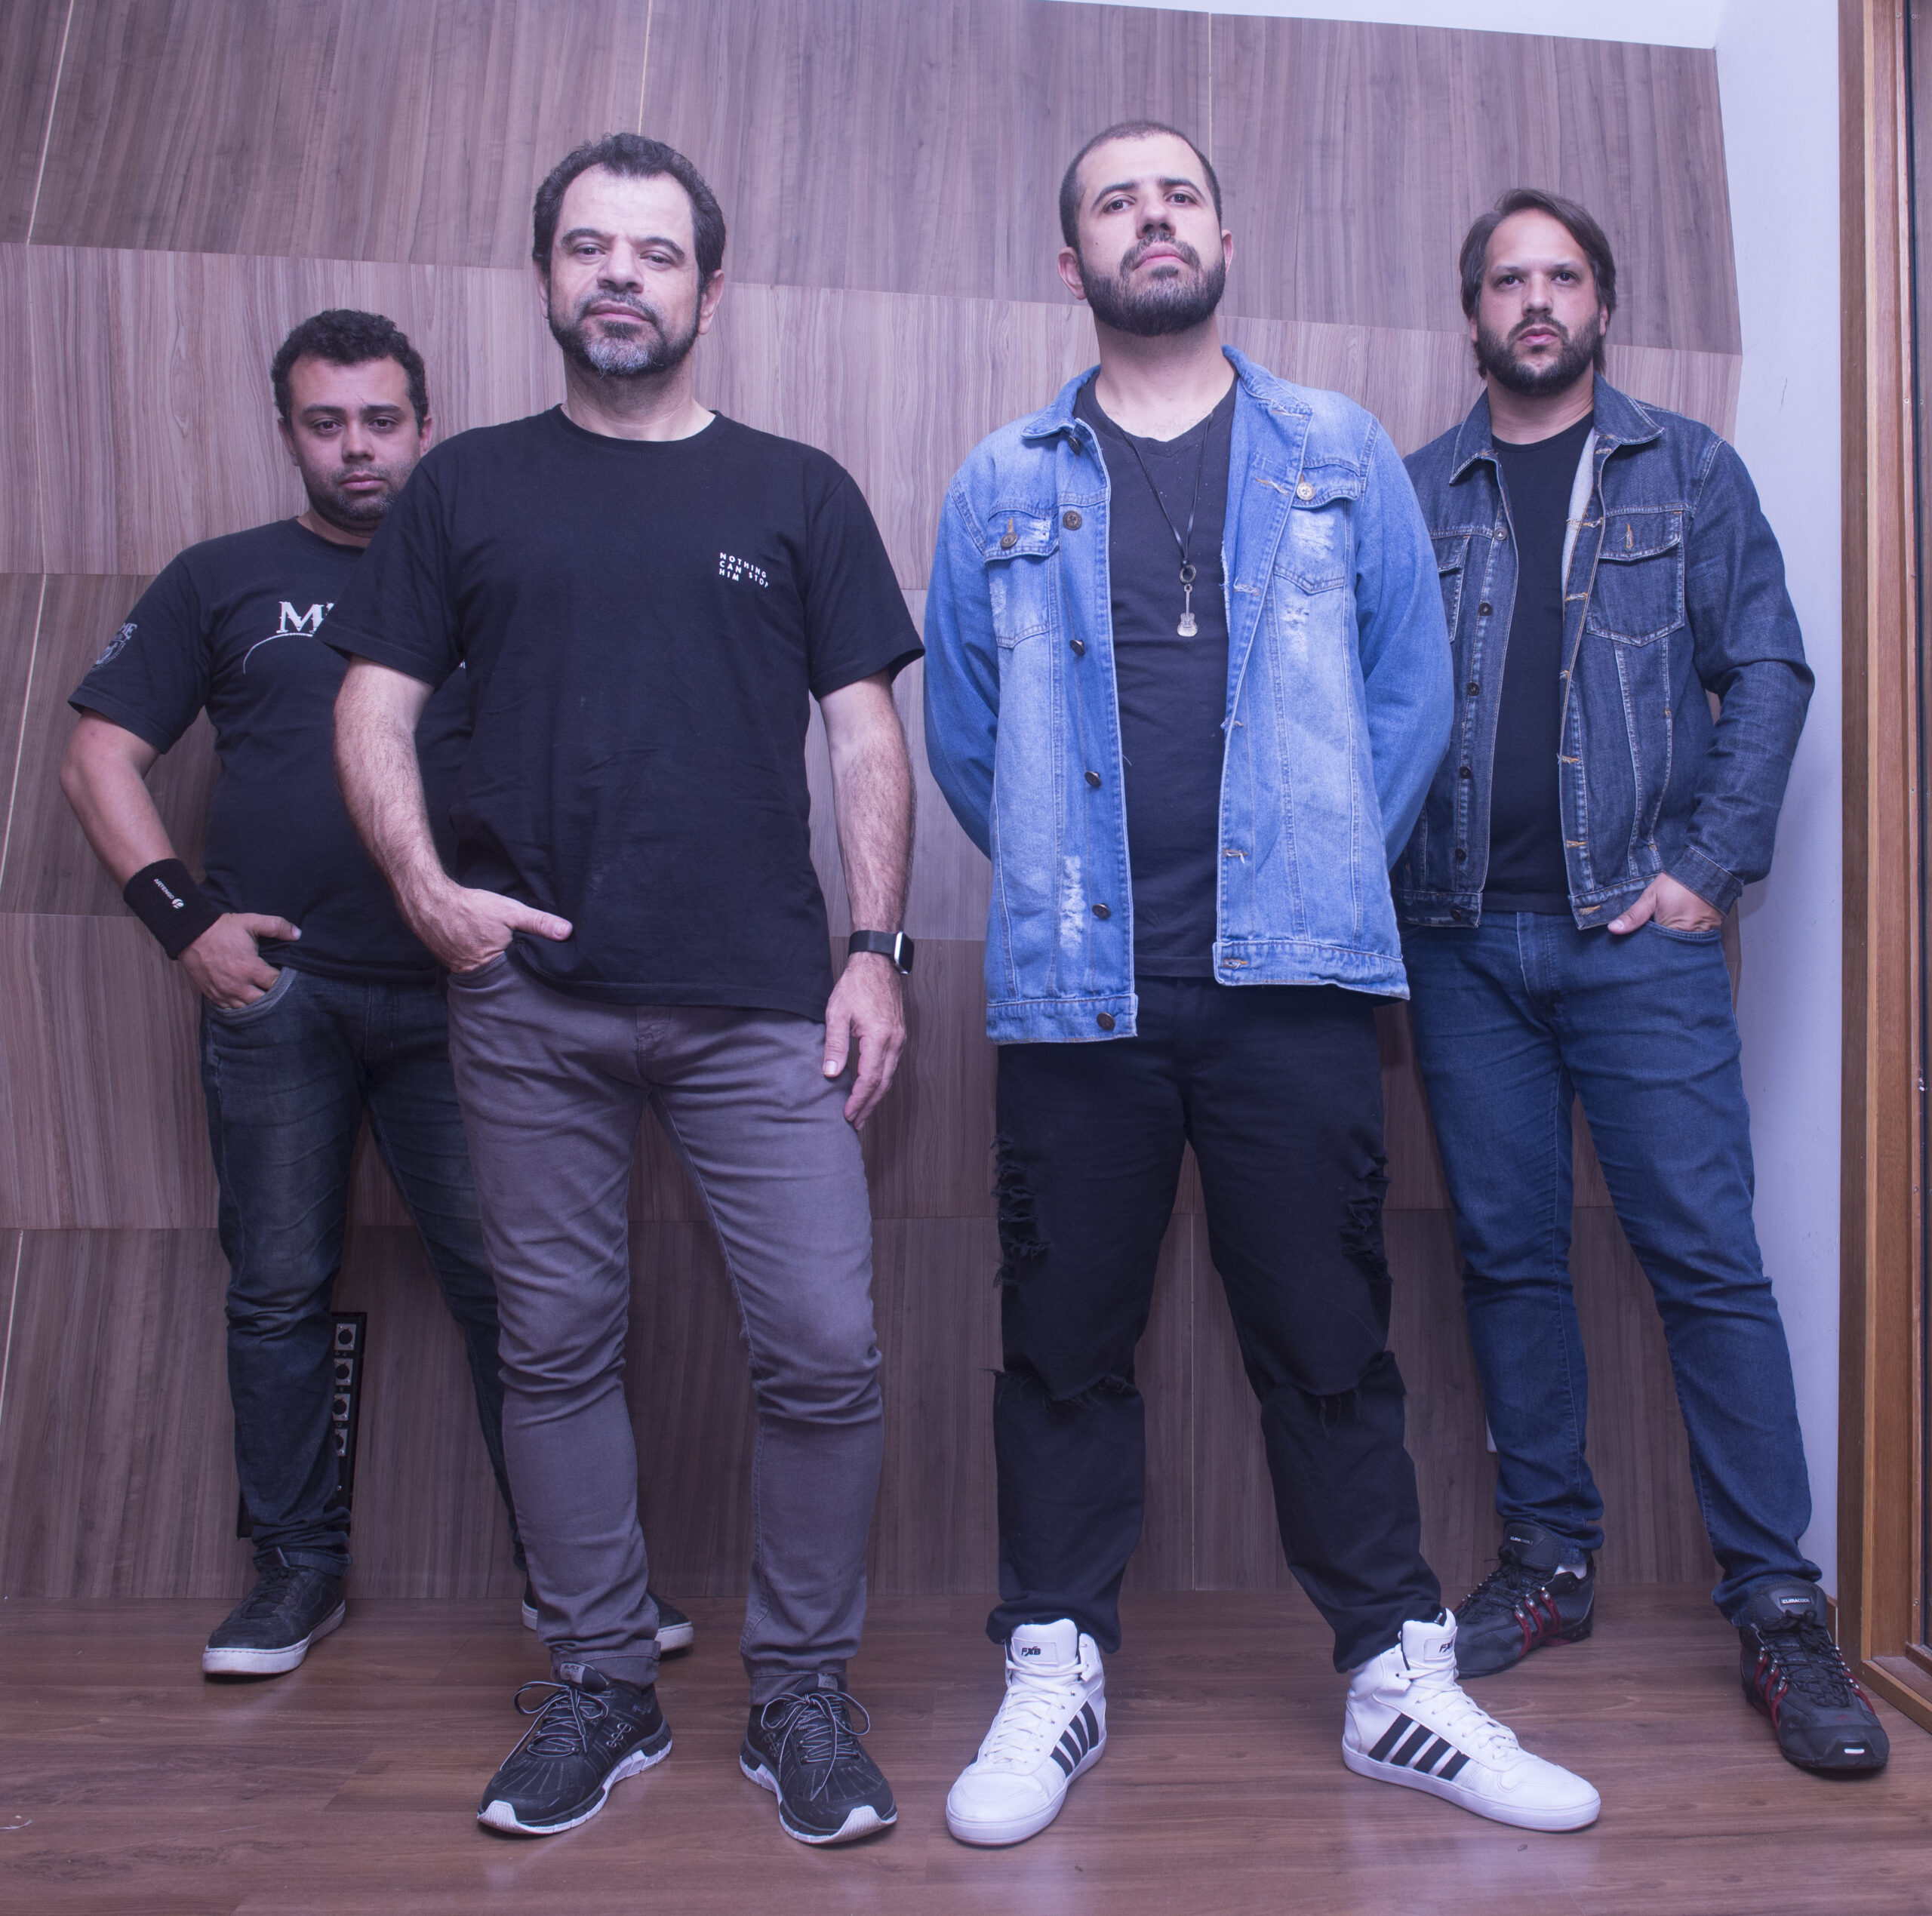 Banda paranaense de rock Imersão lança o single “Força” nas plataformas digitais